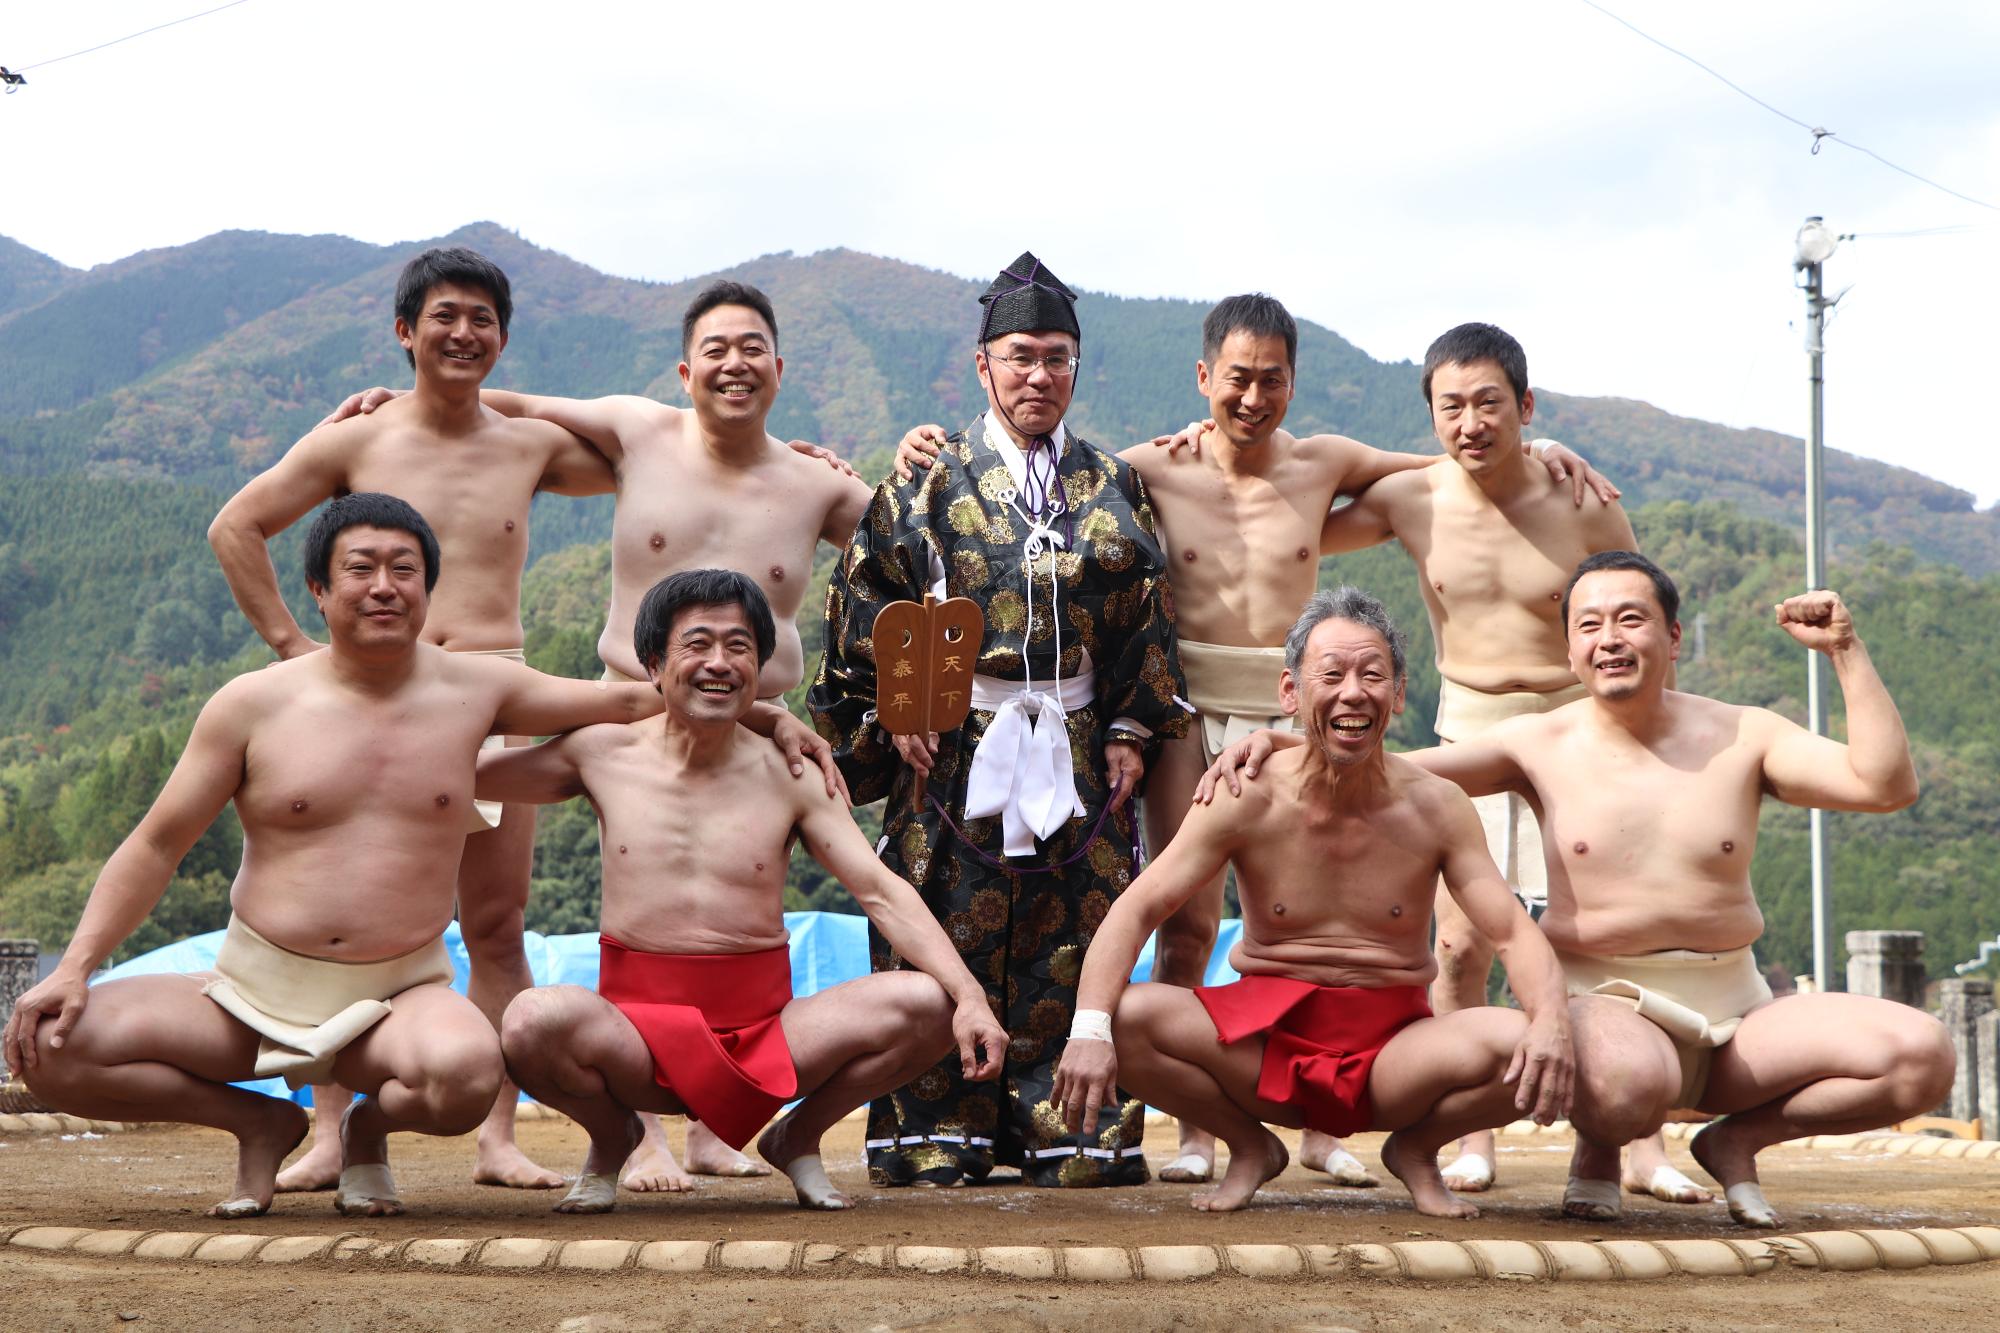 還暦相撲に参加した宝殿神社奉納相撲実行委員会力士会の力士らが並んで笑っている写真